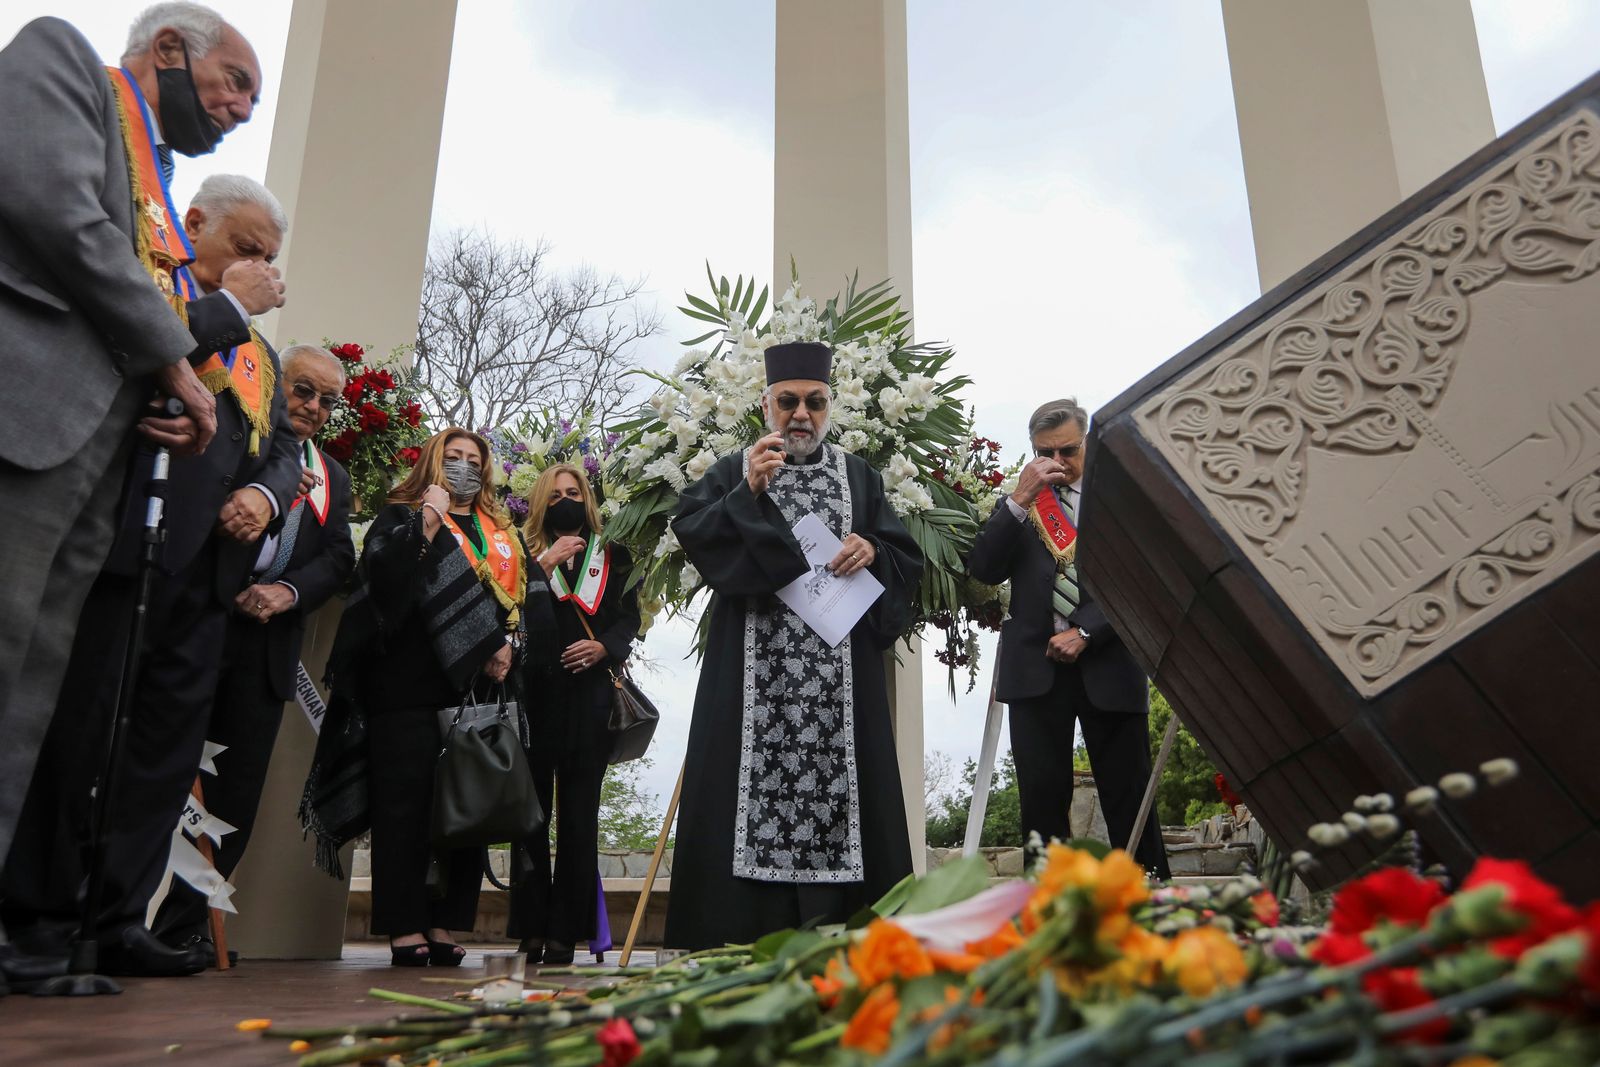 أفراد من ذوي الأصول الأرمنية يجتمعون لإحياء ذكرى الإبادة الجماعية عام 1915 في نصب شهداء الأرمن في مونتيبيلو بولاية كاليفورنيا الأميركية.  - REUTERS